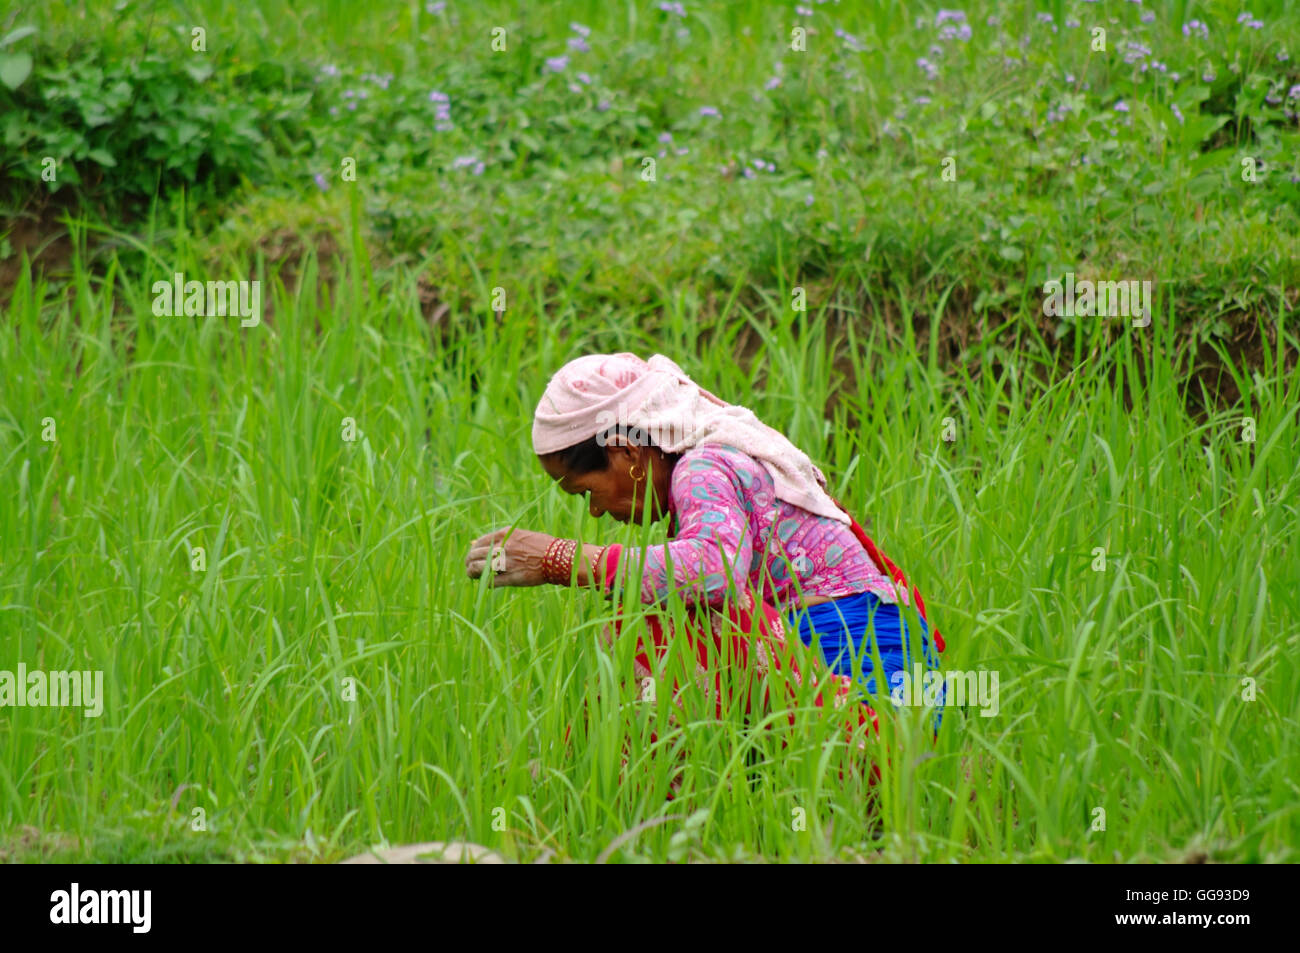 POKHARA, NP - CIRCA AOÛT 2012 - femme travaille dans une plantation de riz vers août 2012, dans la région de Pokhara. Banque D'Images